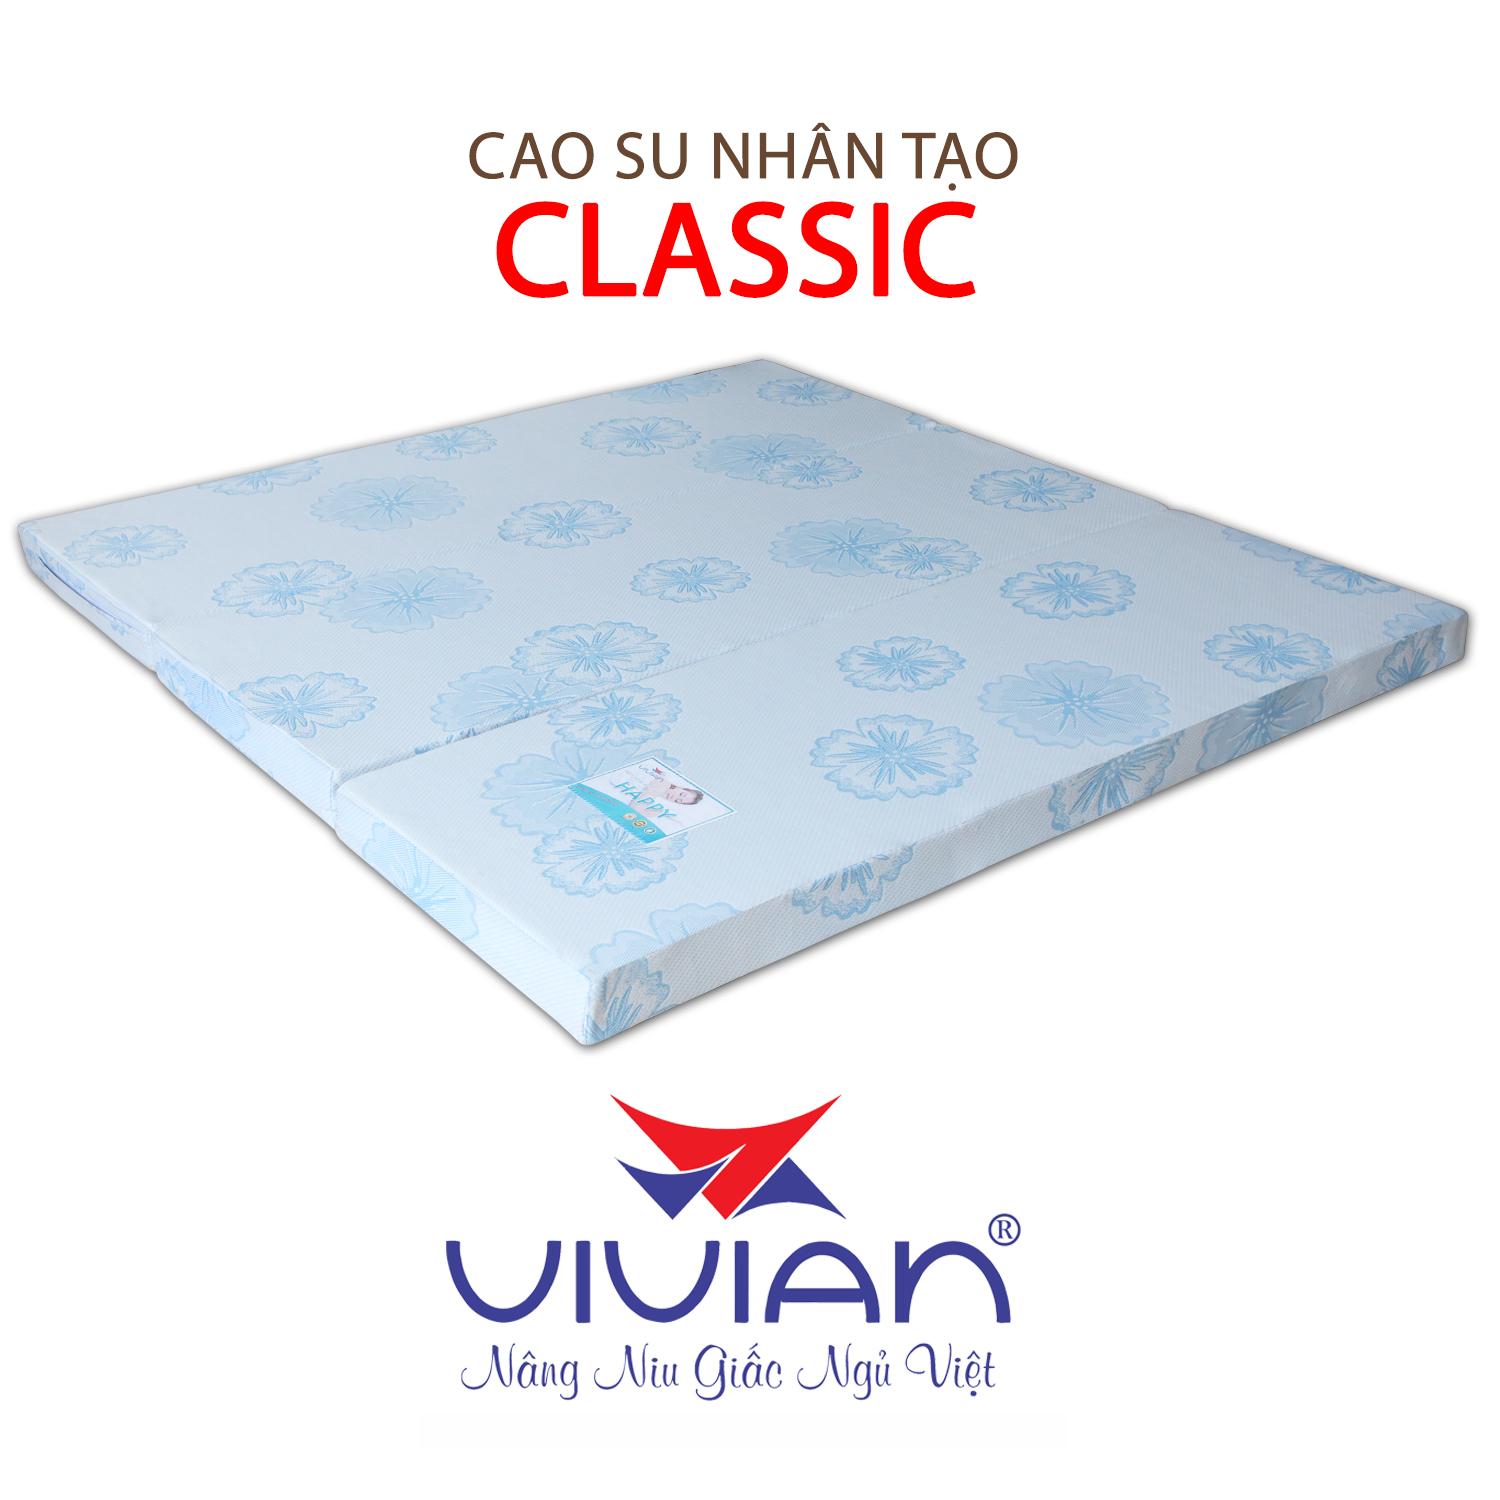 NỆM CAO SU NHÂN TẠO CLASSIC GẤP 3 VIVIAN 140X200X10